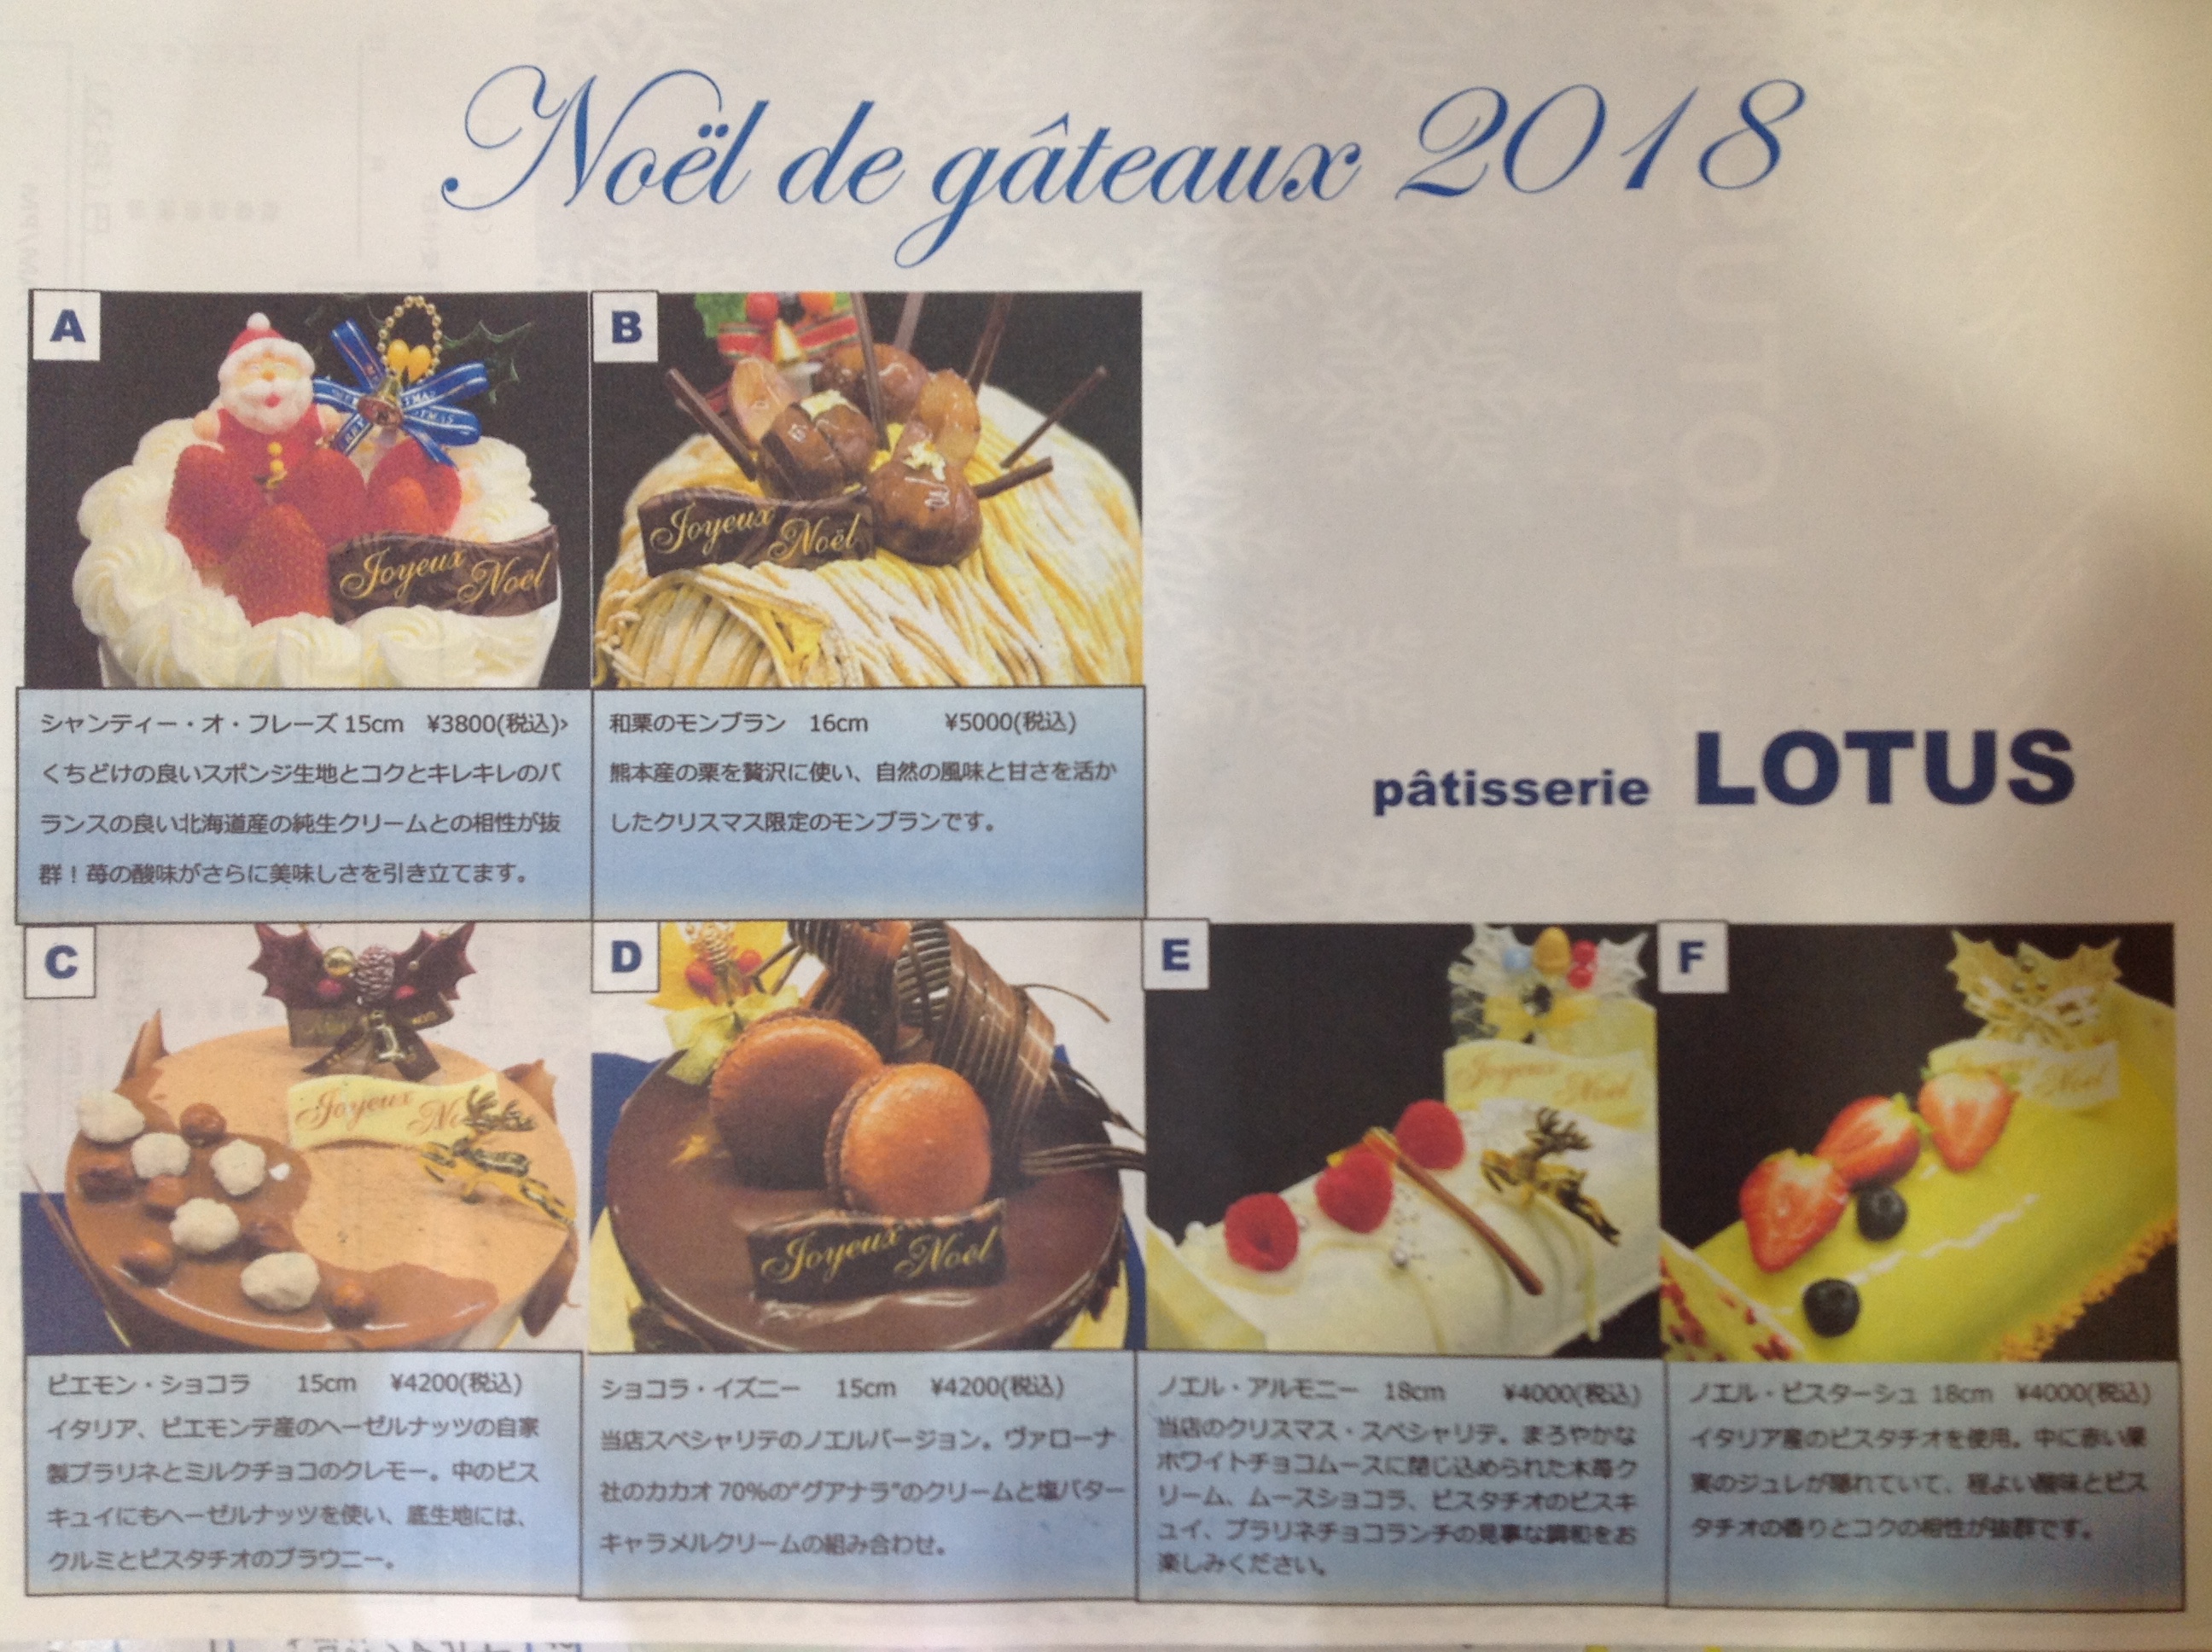 クリスマスケーキ御予約 博多にあるケーキ屋や洋菓子はpatisserie Lotus